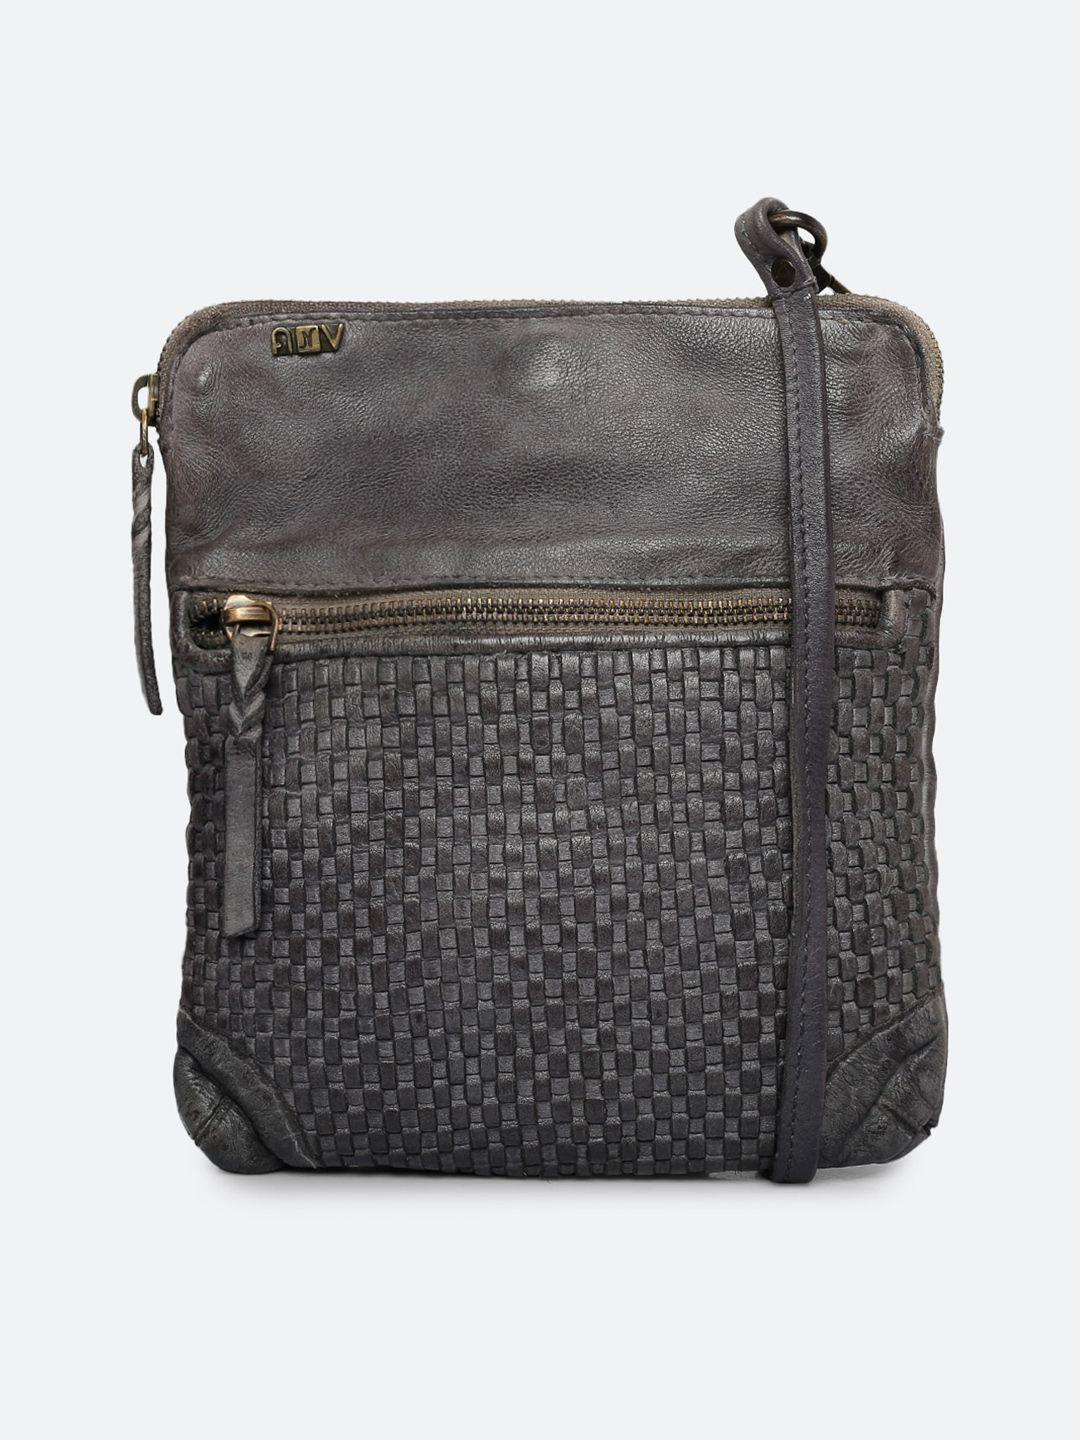 art n vintage textured leather structured sling bag